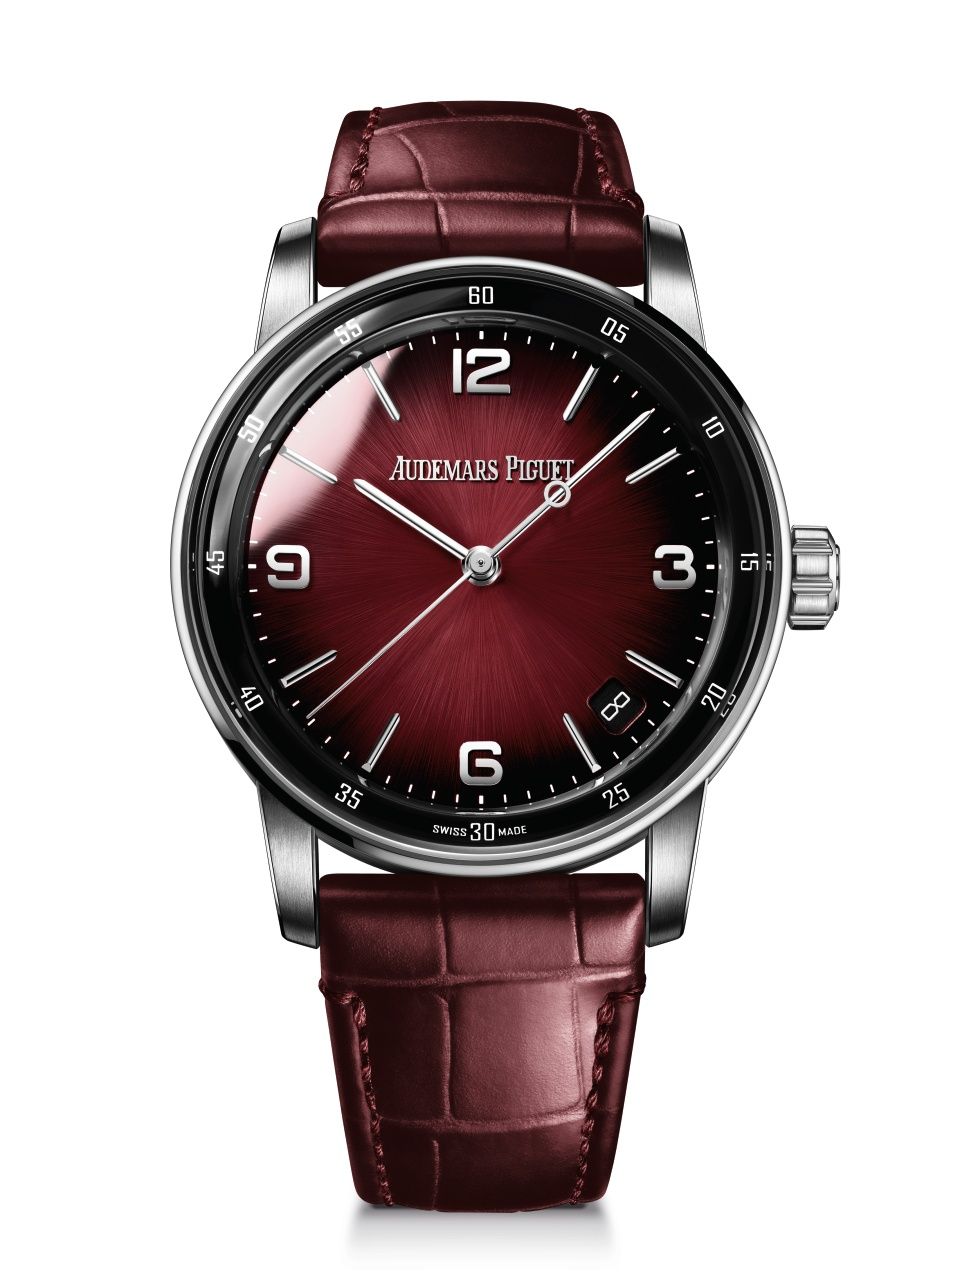 Mẫu đồng hồ code 11.59 với dây đeo da cá sấu may thủ công là một trong những sản phẩm được yêu thích và đánh giá cao từ Audemars Piguet. Ảnh: Esquire